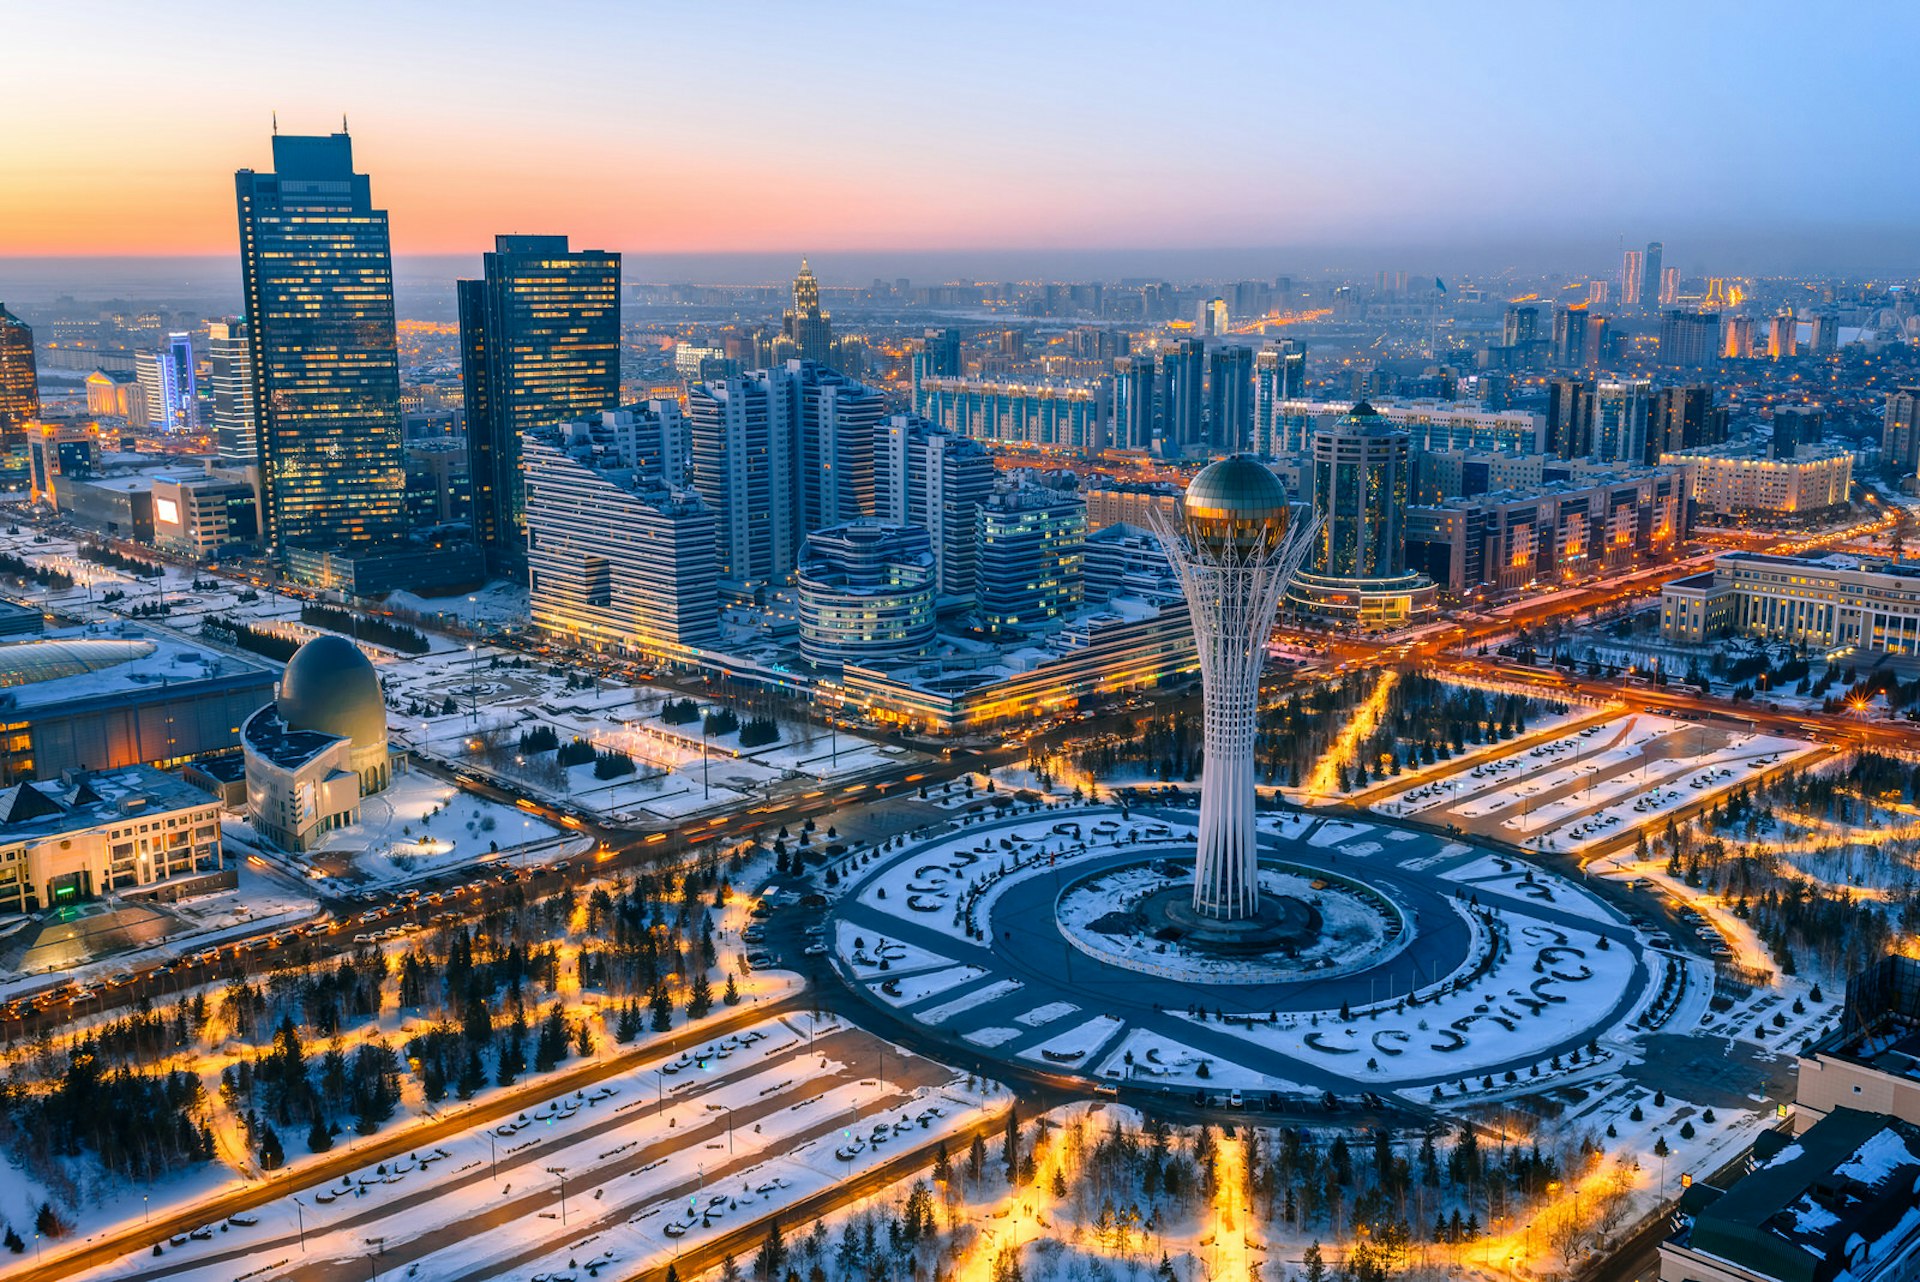 An aerial view of Astana, Kazakhstan © evgenykz / Shutterstock